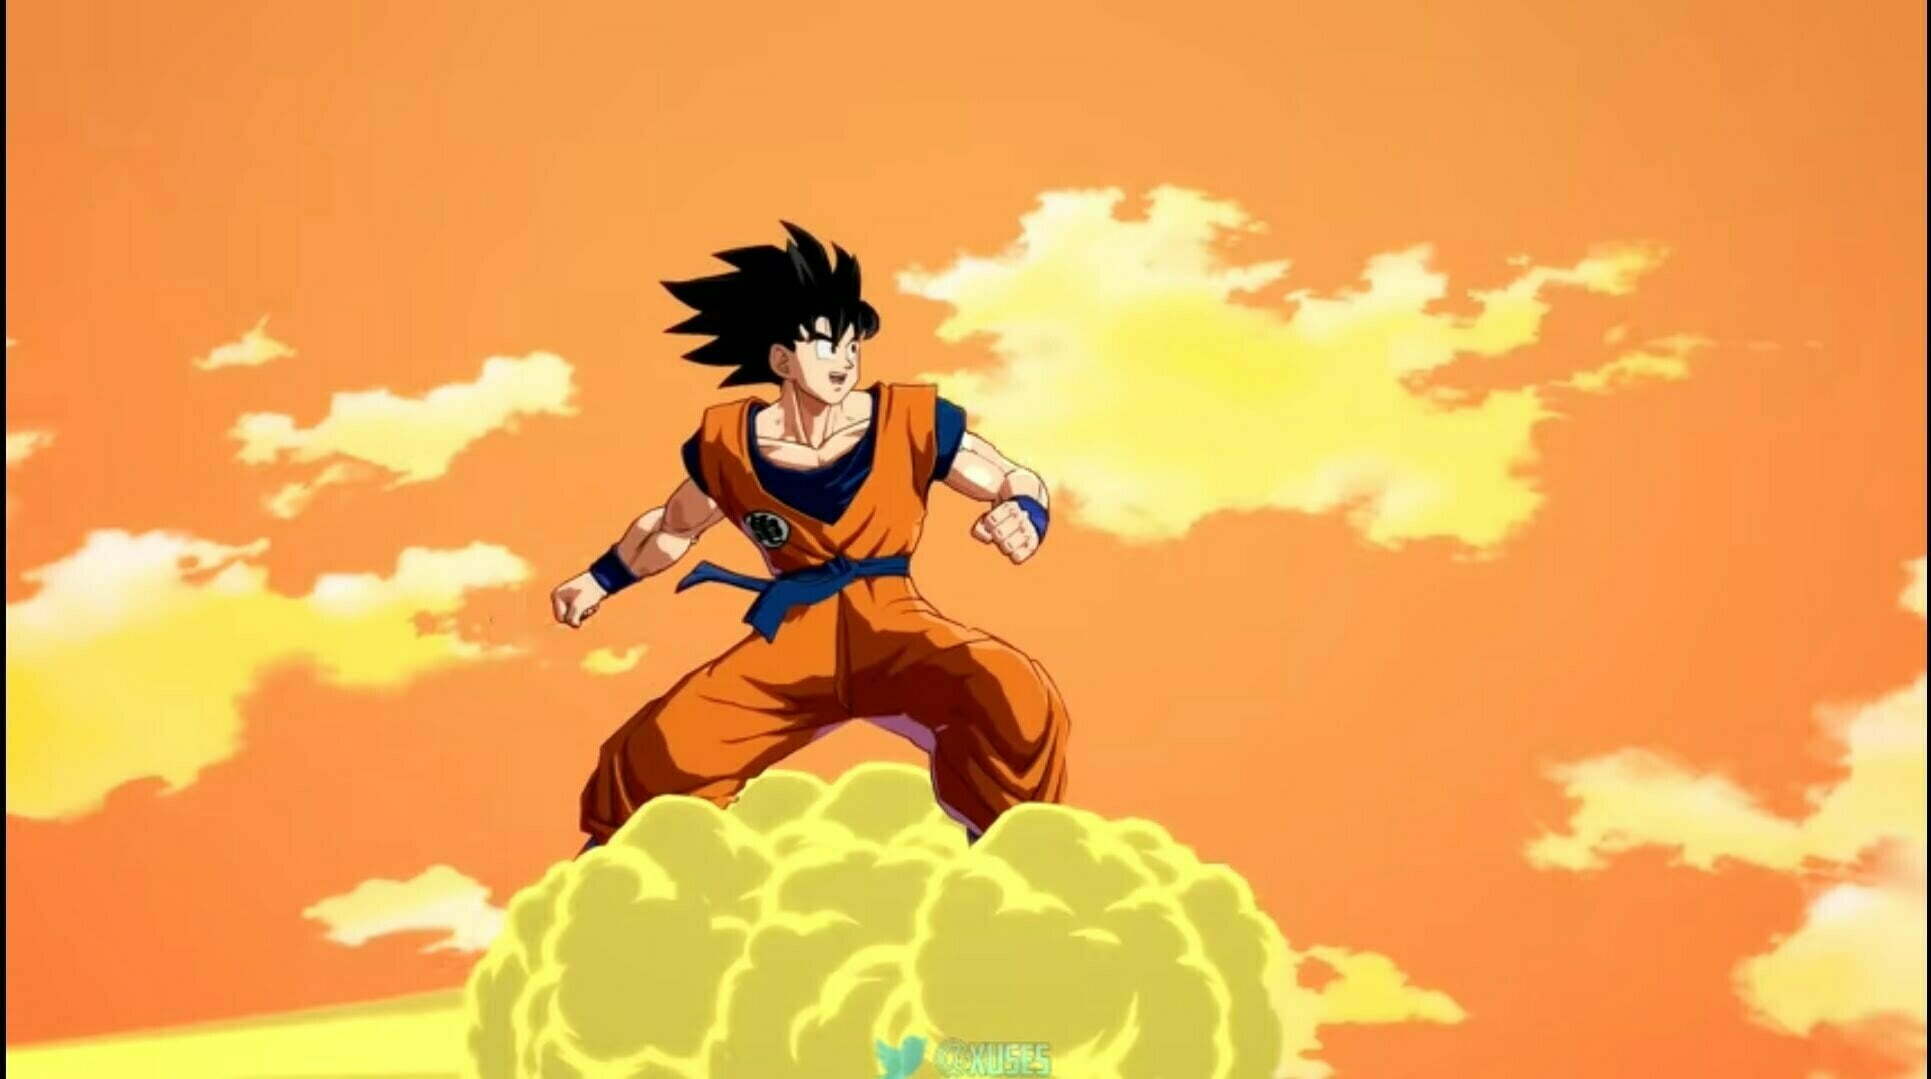 Base Goku in Dragon ball A Tier